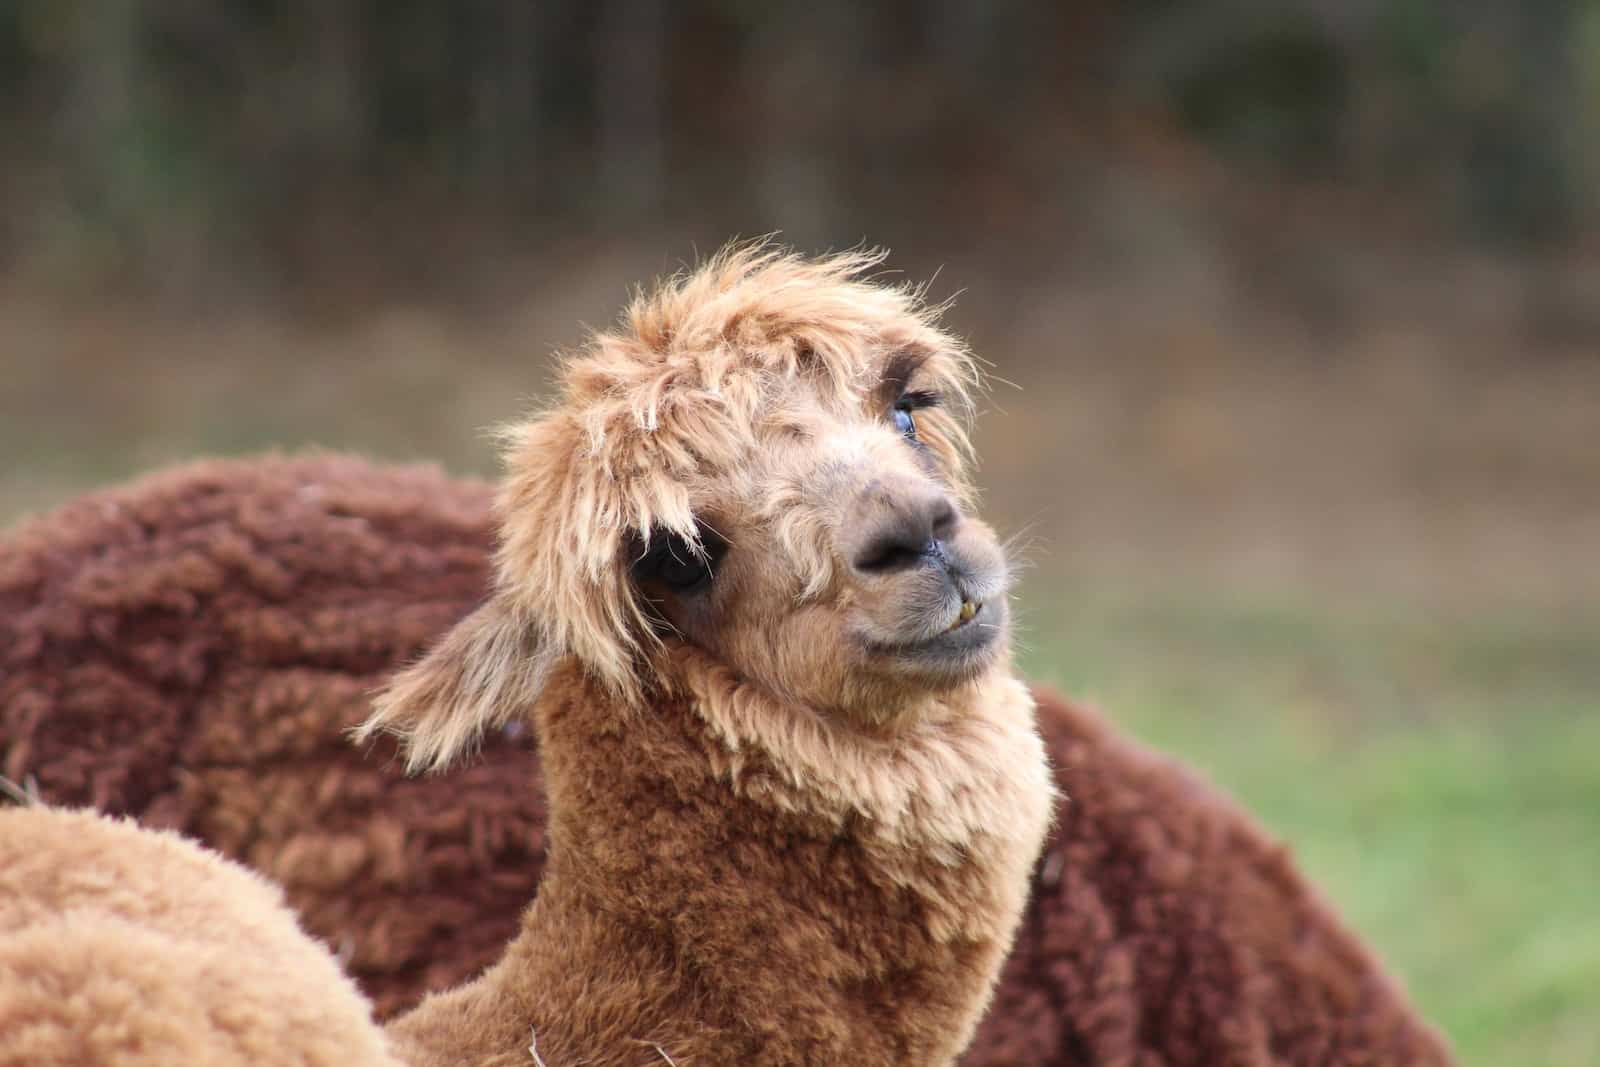 a close up of a llama in a field